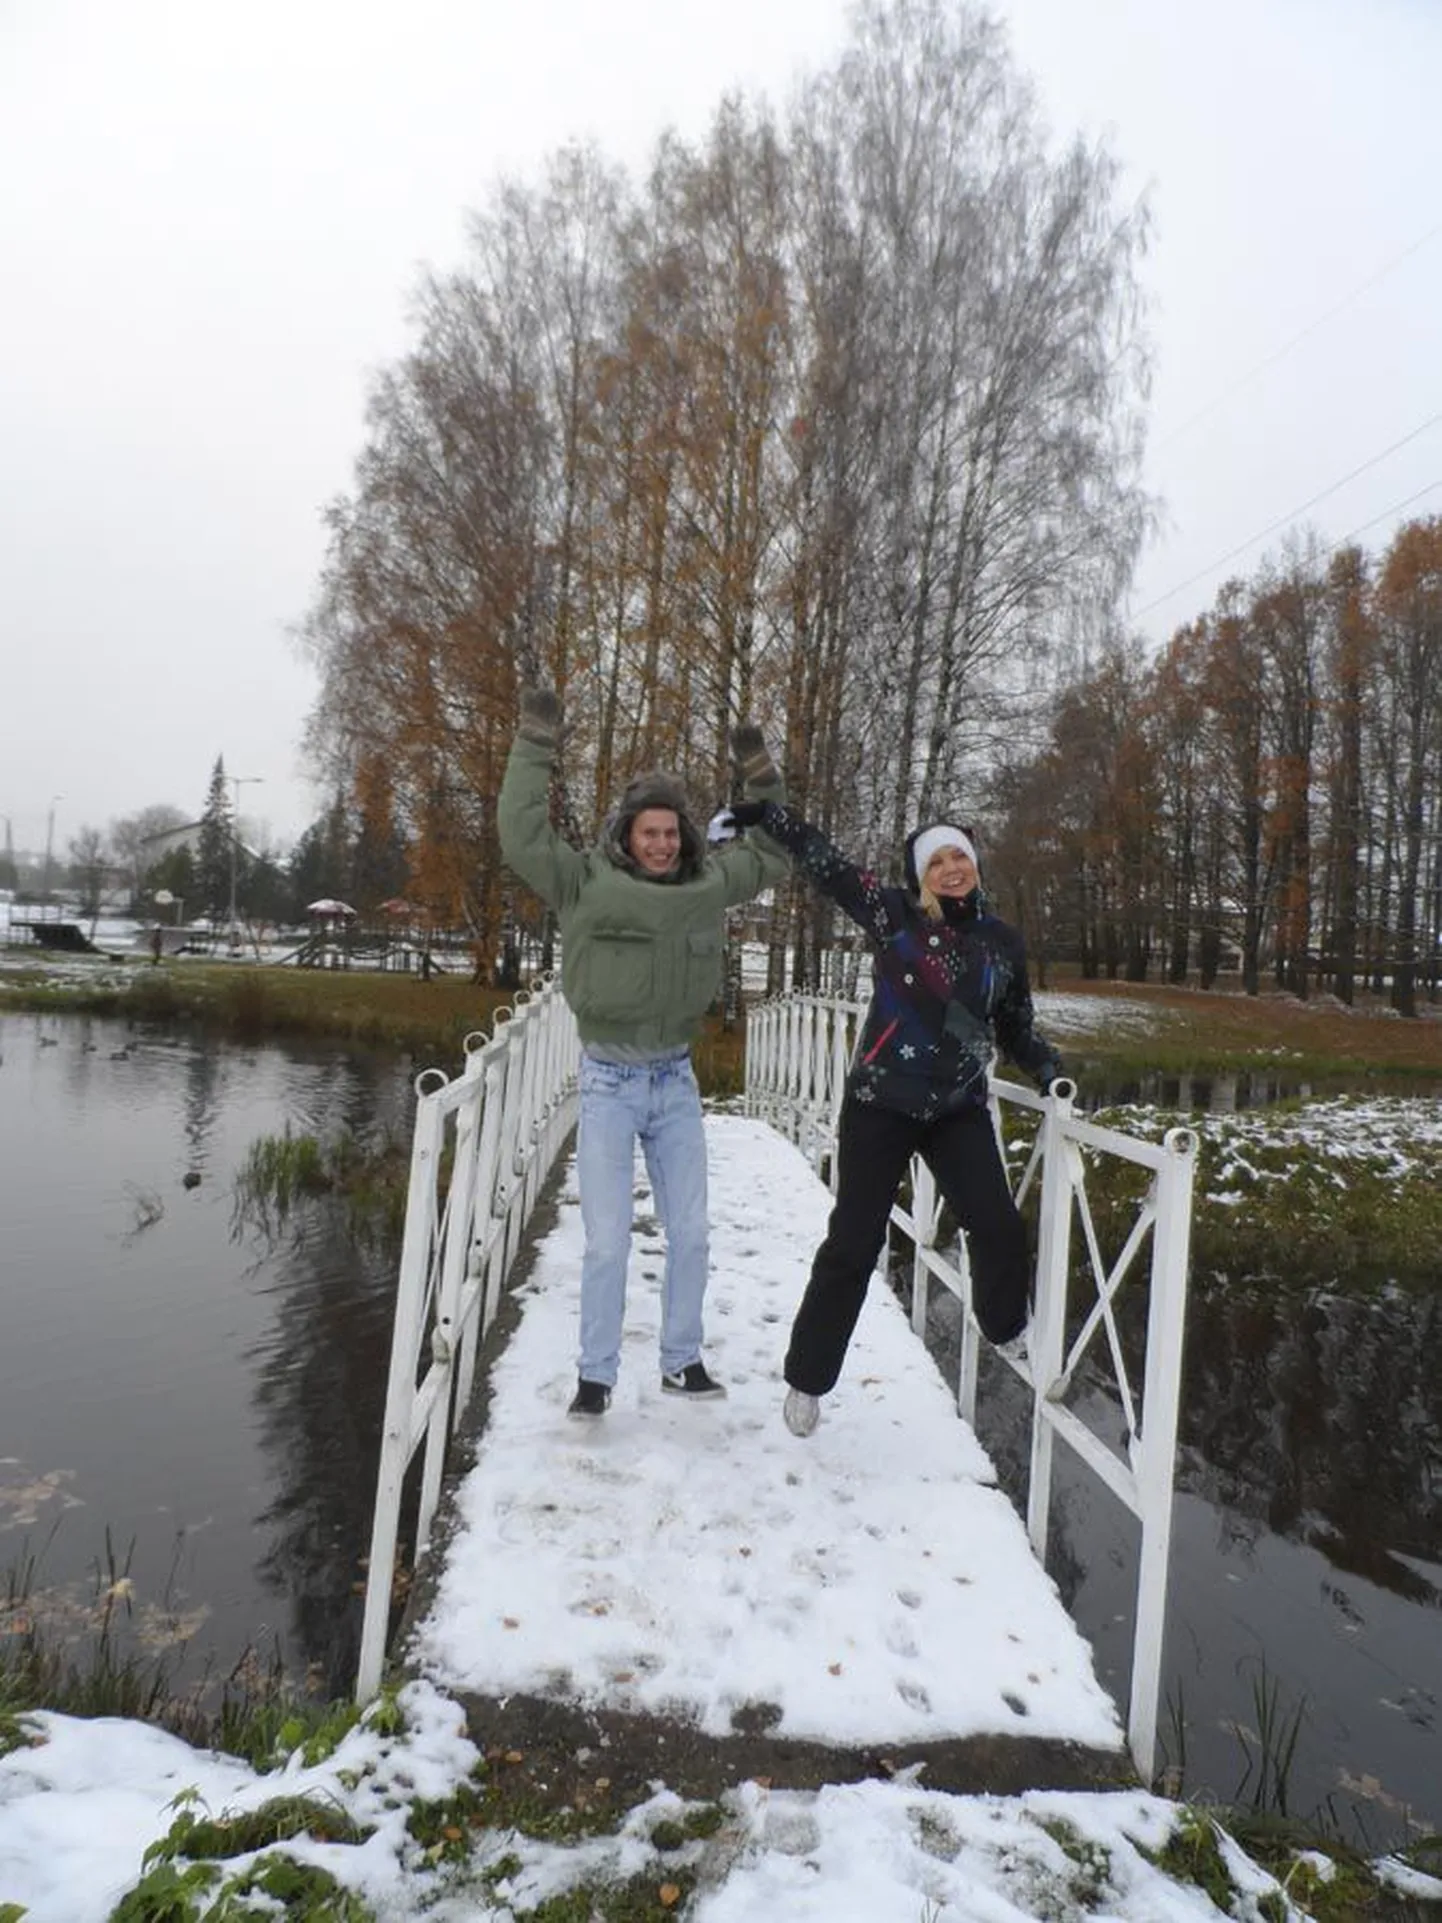 Ühe ülesandena tuli ära lugeda, mitu valgete käsipuudega silda on Valuoja orus. Linnamängus osaleja Aleksei Širokov ja üks linnamängu eestvedajatest Lenna Põder said neid vaatele ja mälule tuginedes kokku kolm.